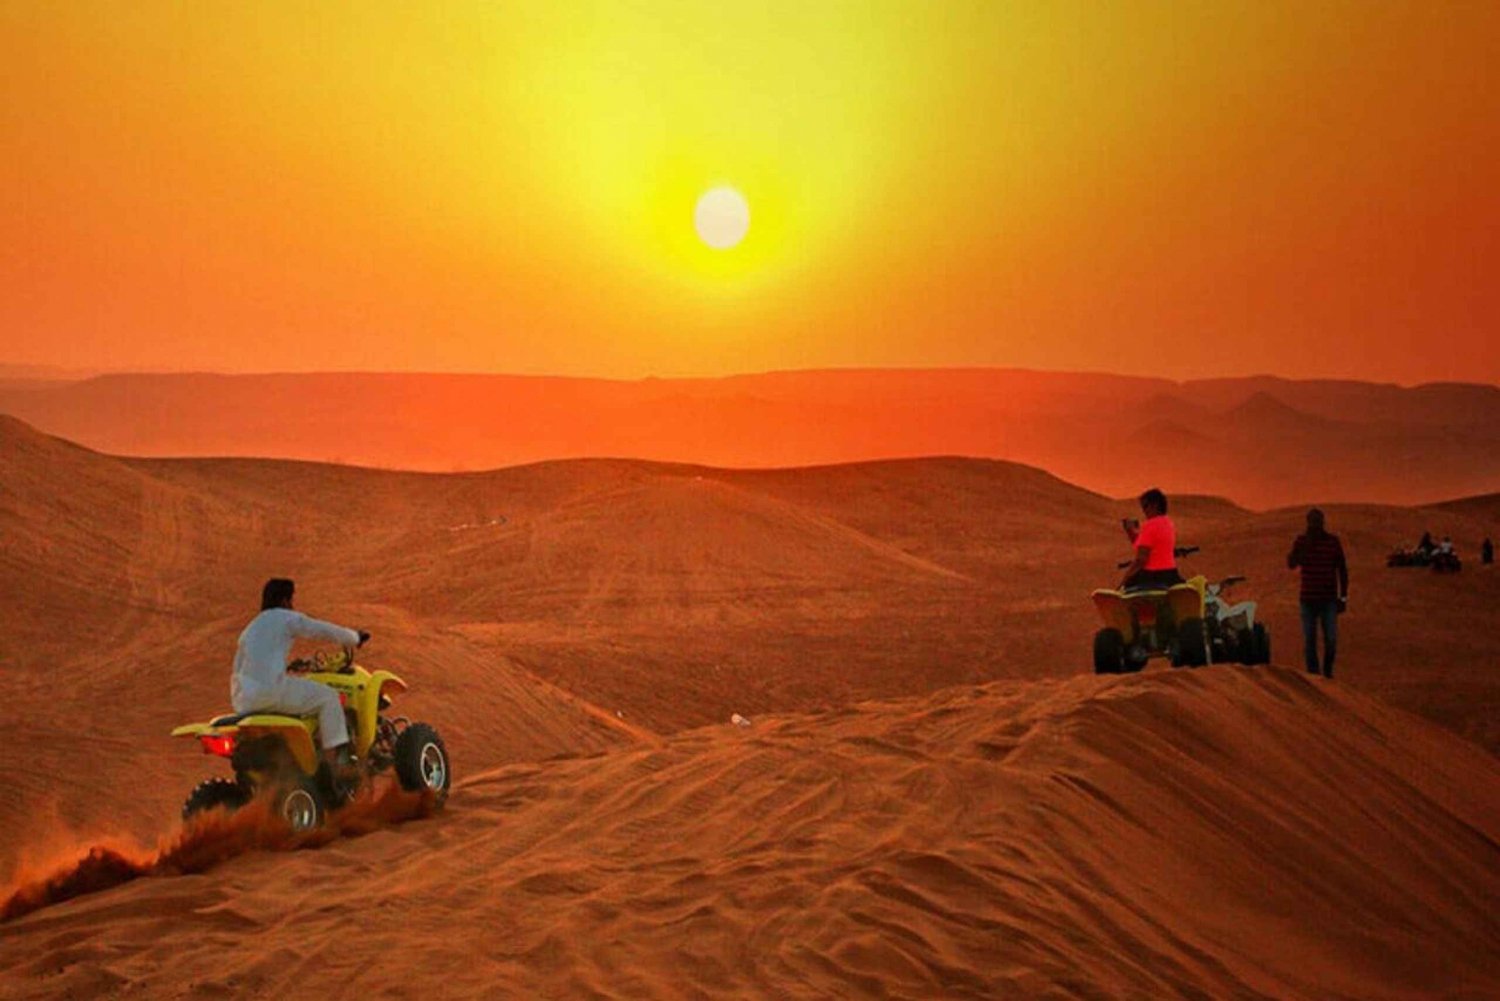 Riyadh: Desert Safari Quad Bike with Hotel Transfer